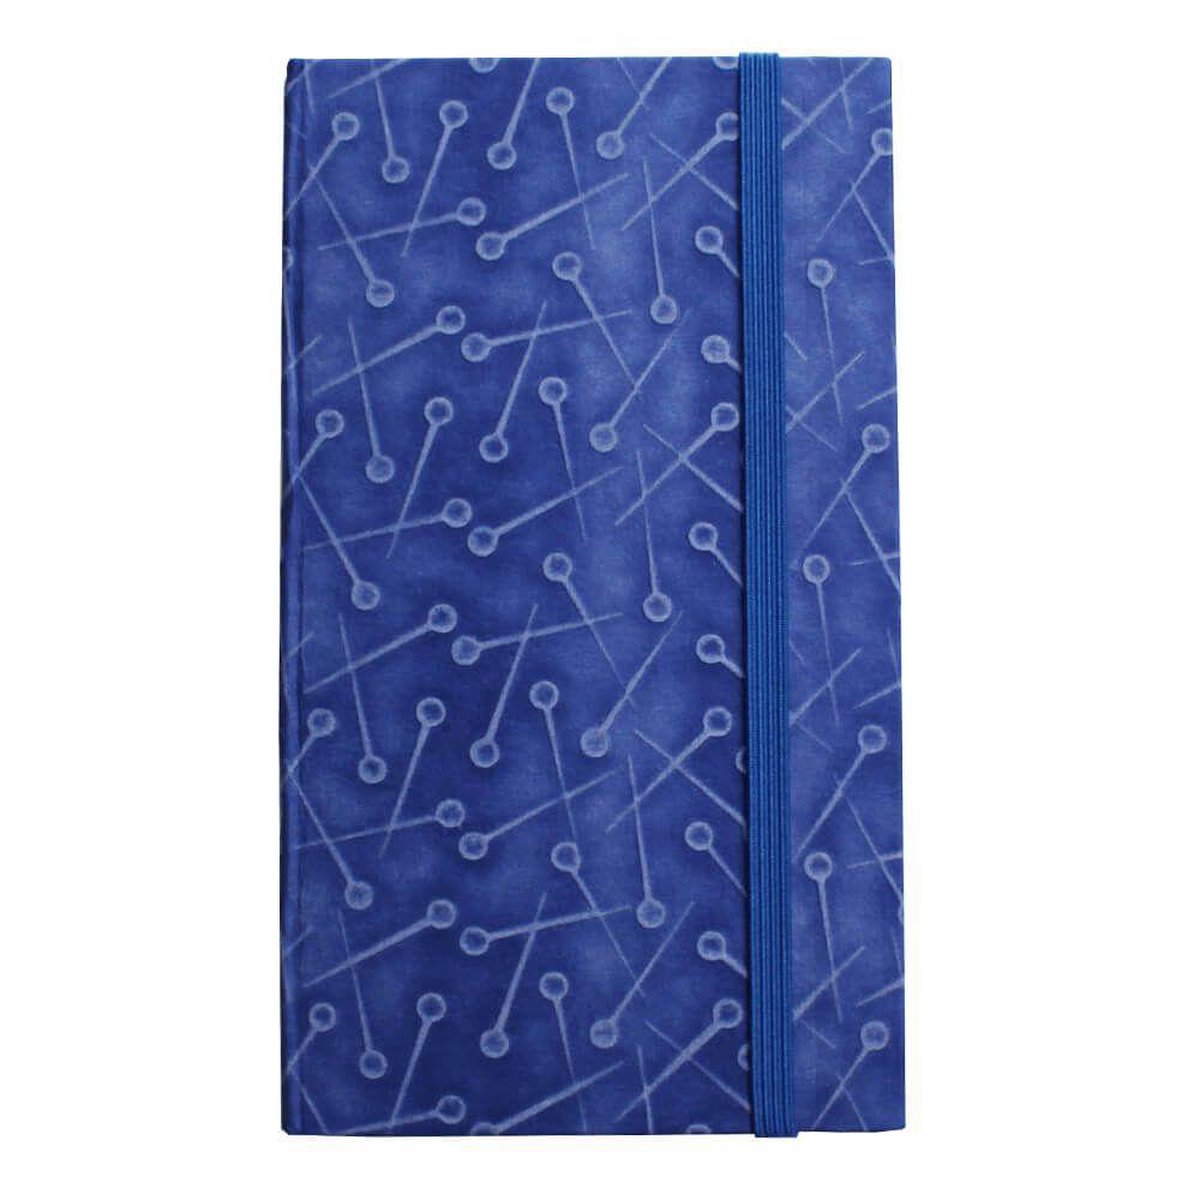 Cohana Ukigami Notitieboek 2,5mm geblokt (blauw)